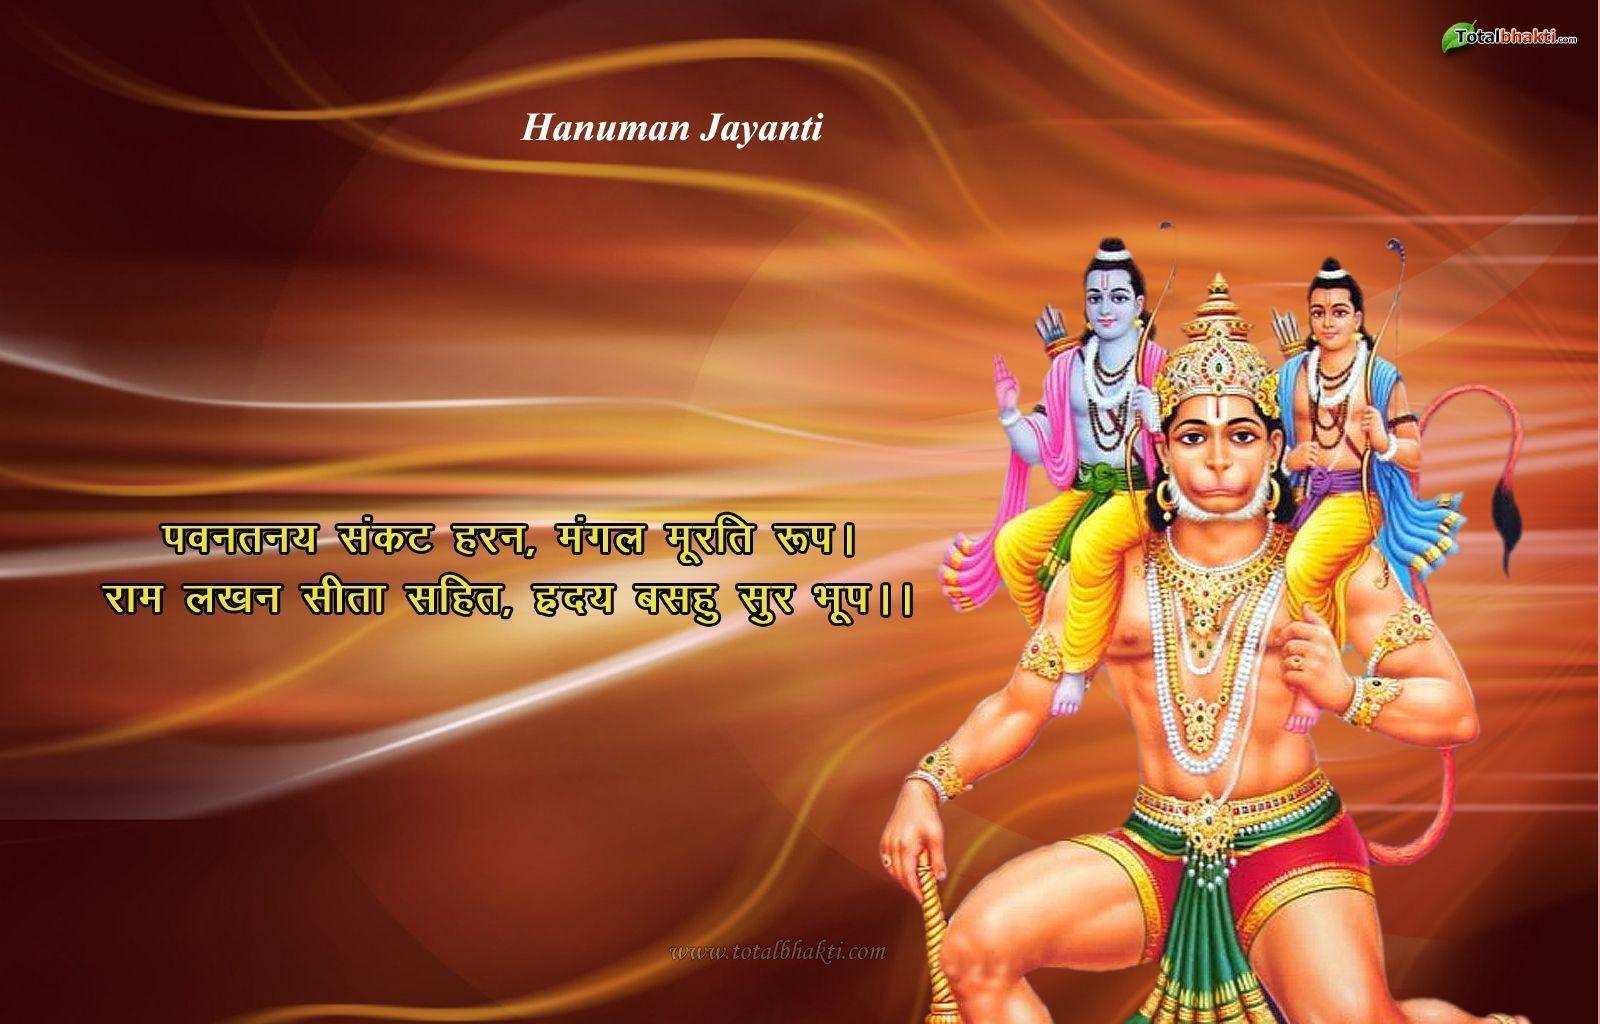 hanuman wallpaper, Hindu wallpaper, Hanuman Jayanti Wallpaper